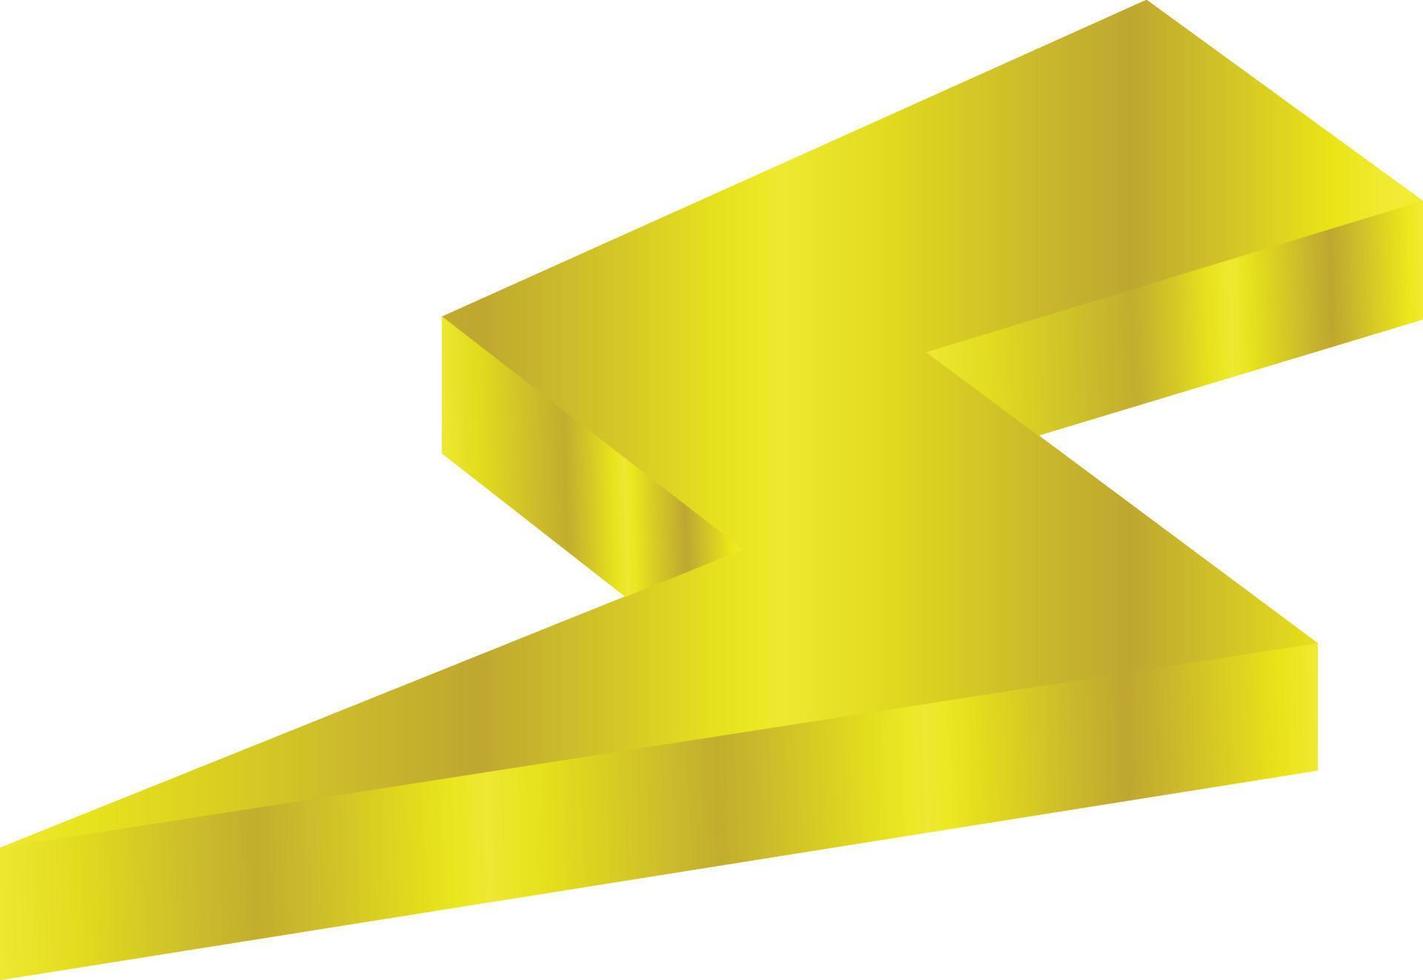 3D goldener Blitz-Icon-Vektor für Design-Element vektor